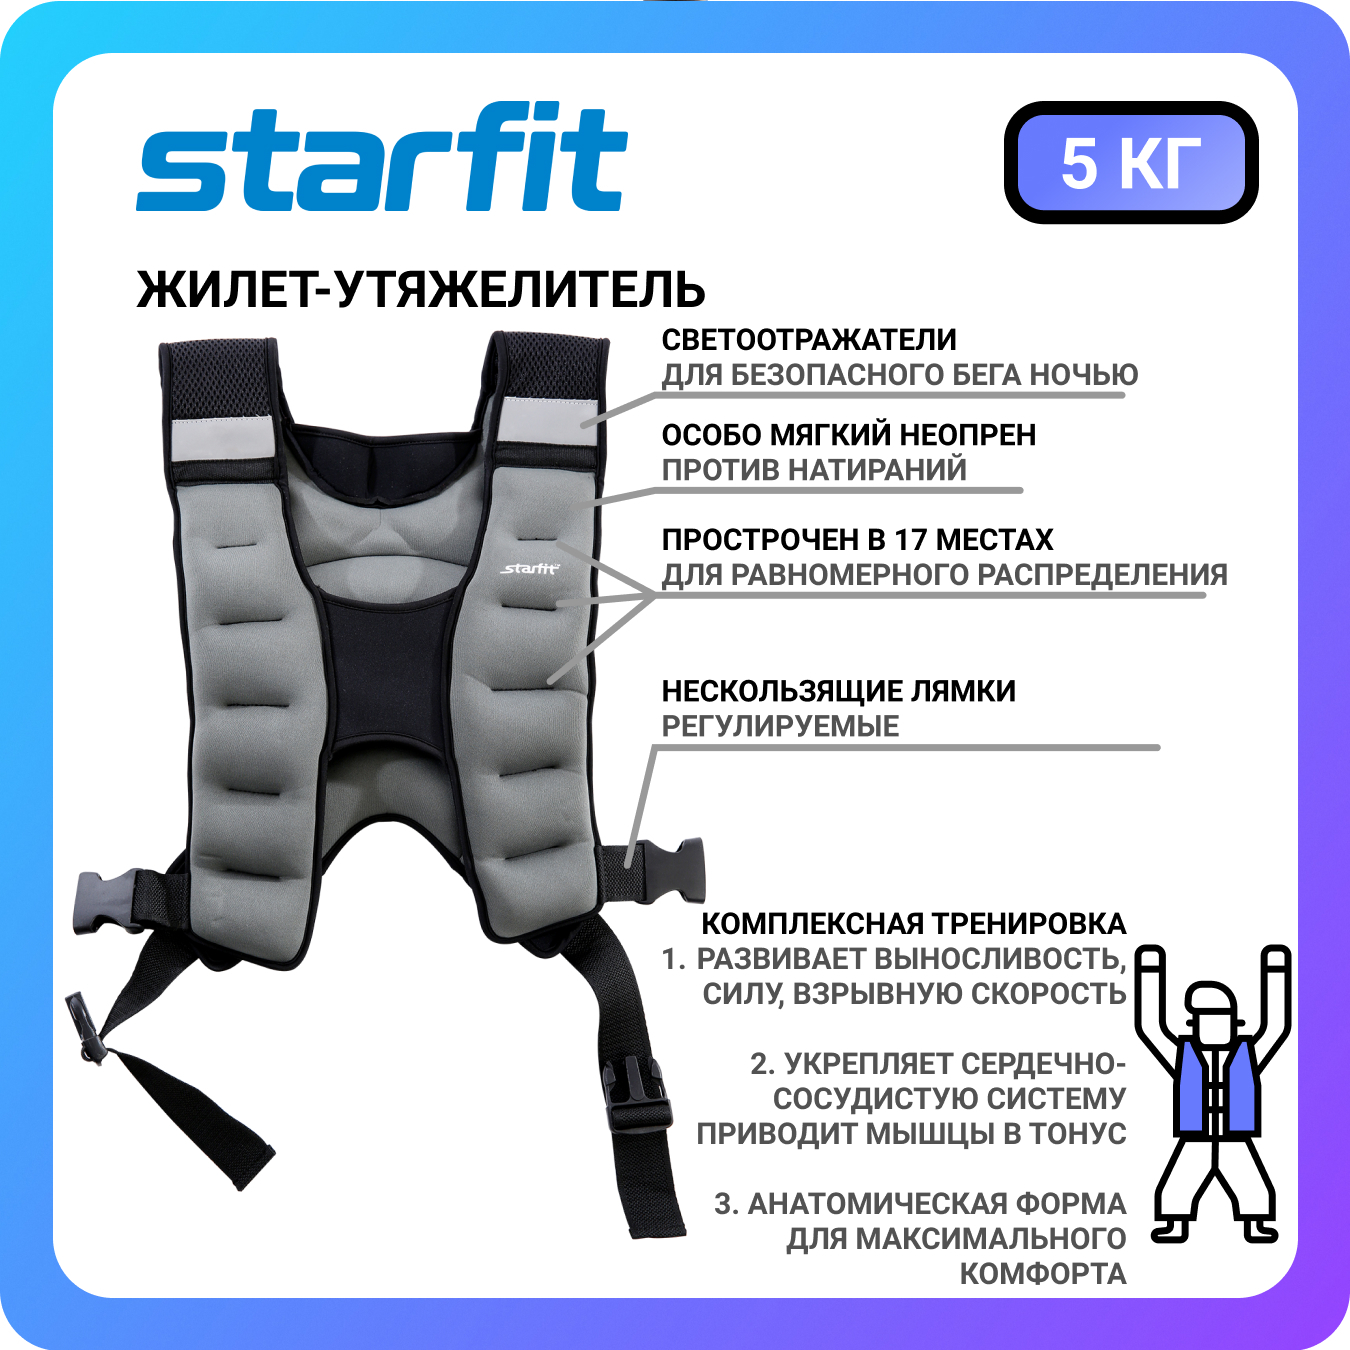 Жилет-утяжелитель STARFIT WT-301, 5 кг, серый -  по выгодной цене .